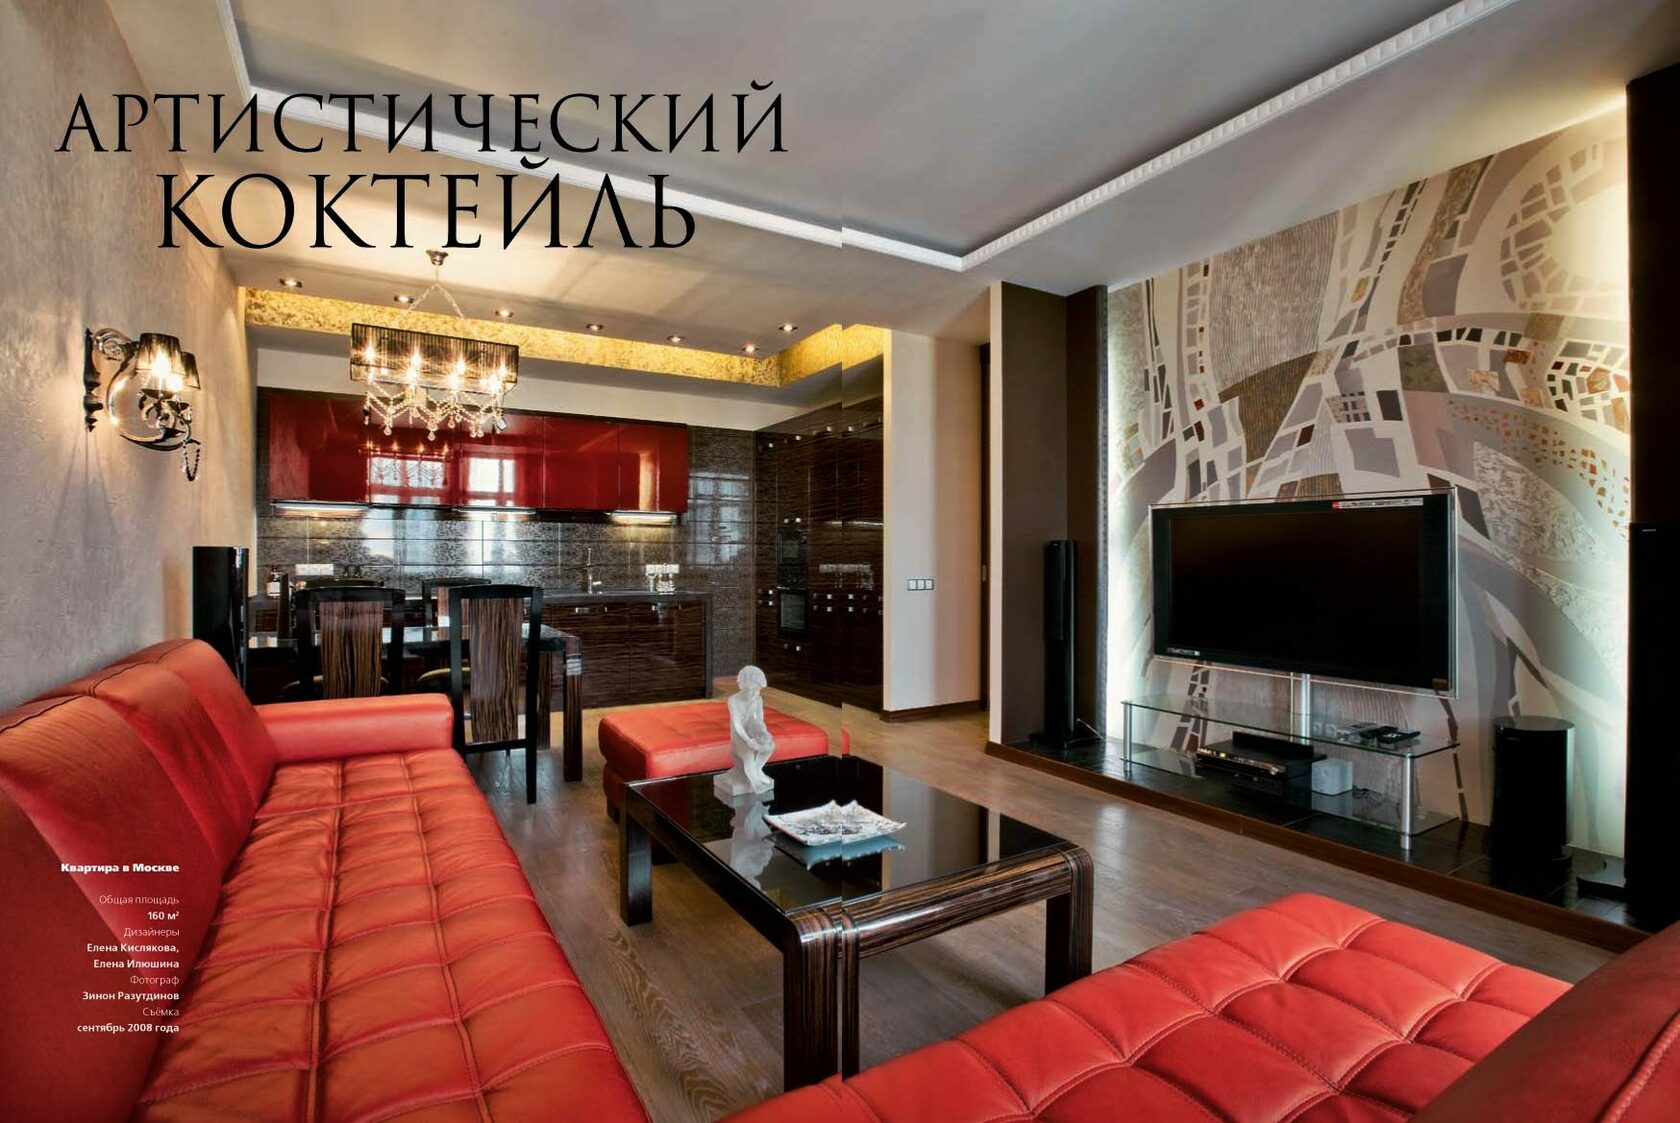 2 комнатная квартира в центре москвы. Красивые квартиры в Москве. Квартира мечты. Интерьер гостиной для карты желаний. Квартира мечты в Москве.